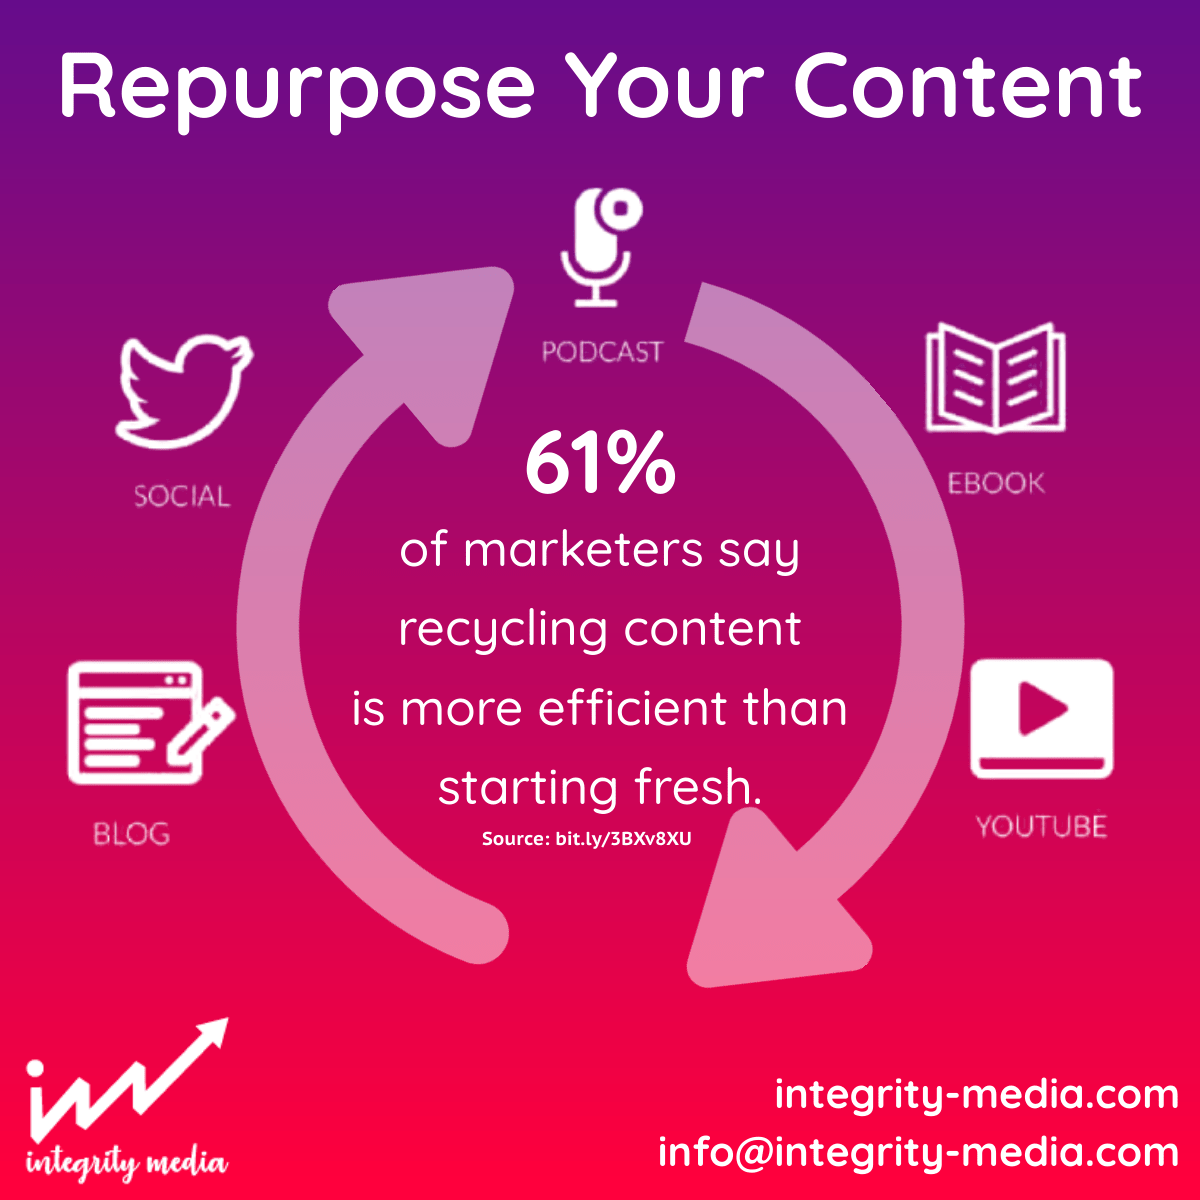 Repurpose Your Content